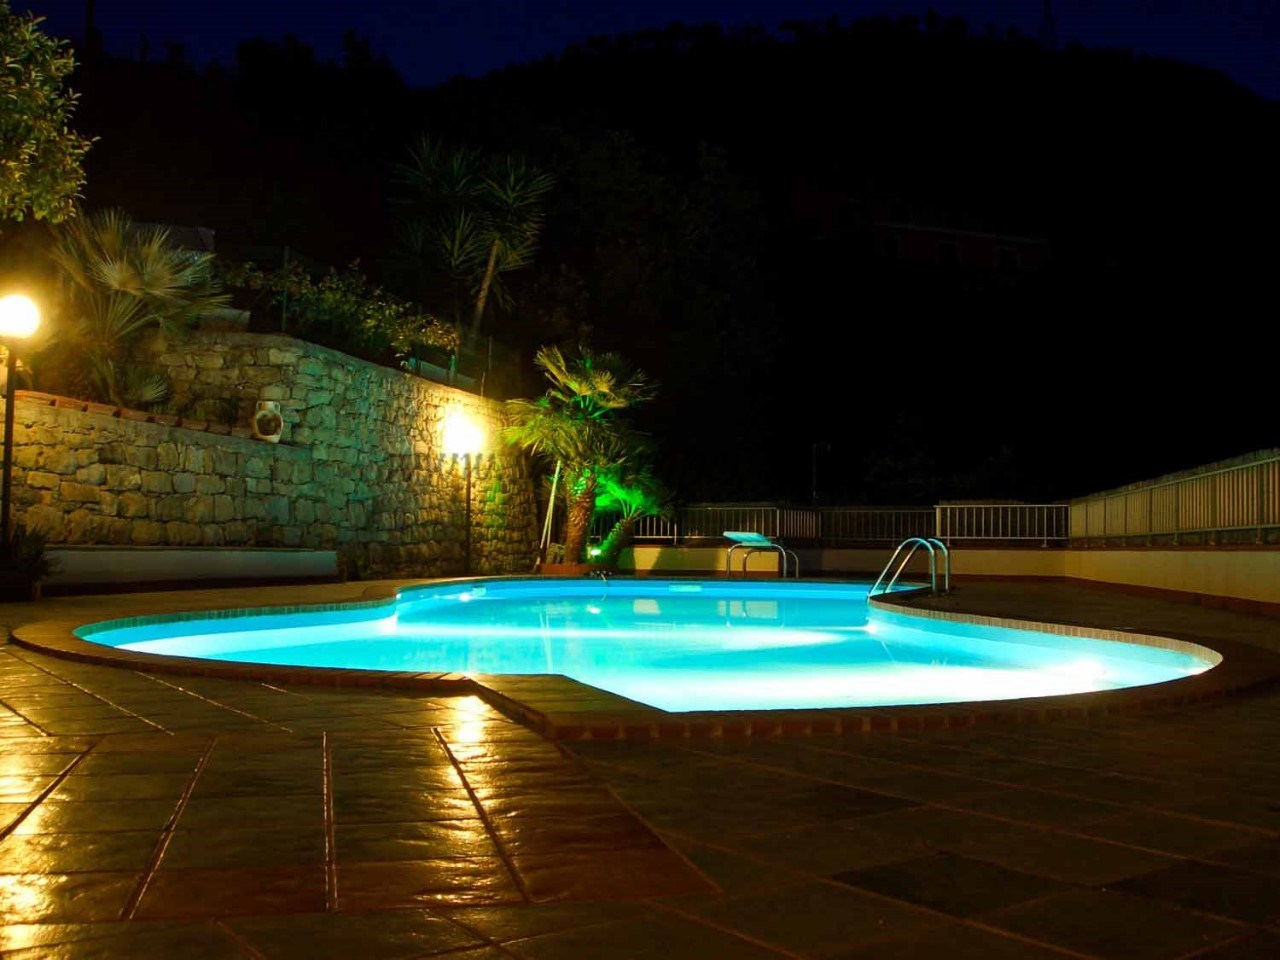 Villa in vendita a Vallecrosia, 9 locali, prezzo € 610.000 | PortaleAgenzieImmobiliari.it